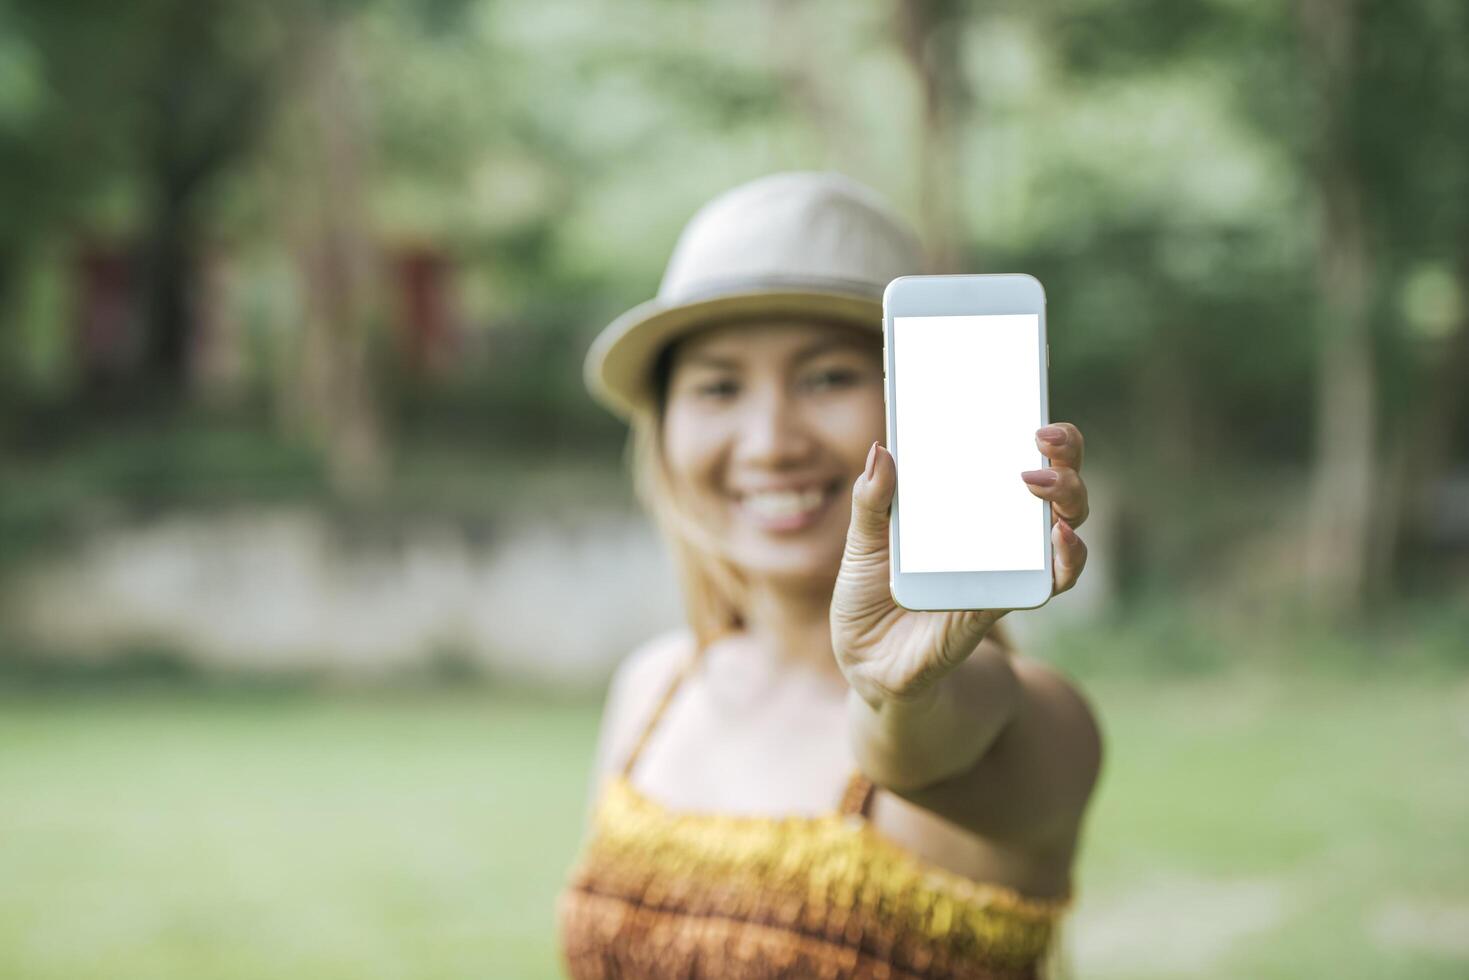 mano della donna che tiene il cellulare, smartphone con schermo bianco foto